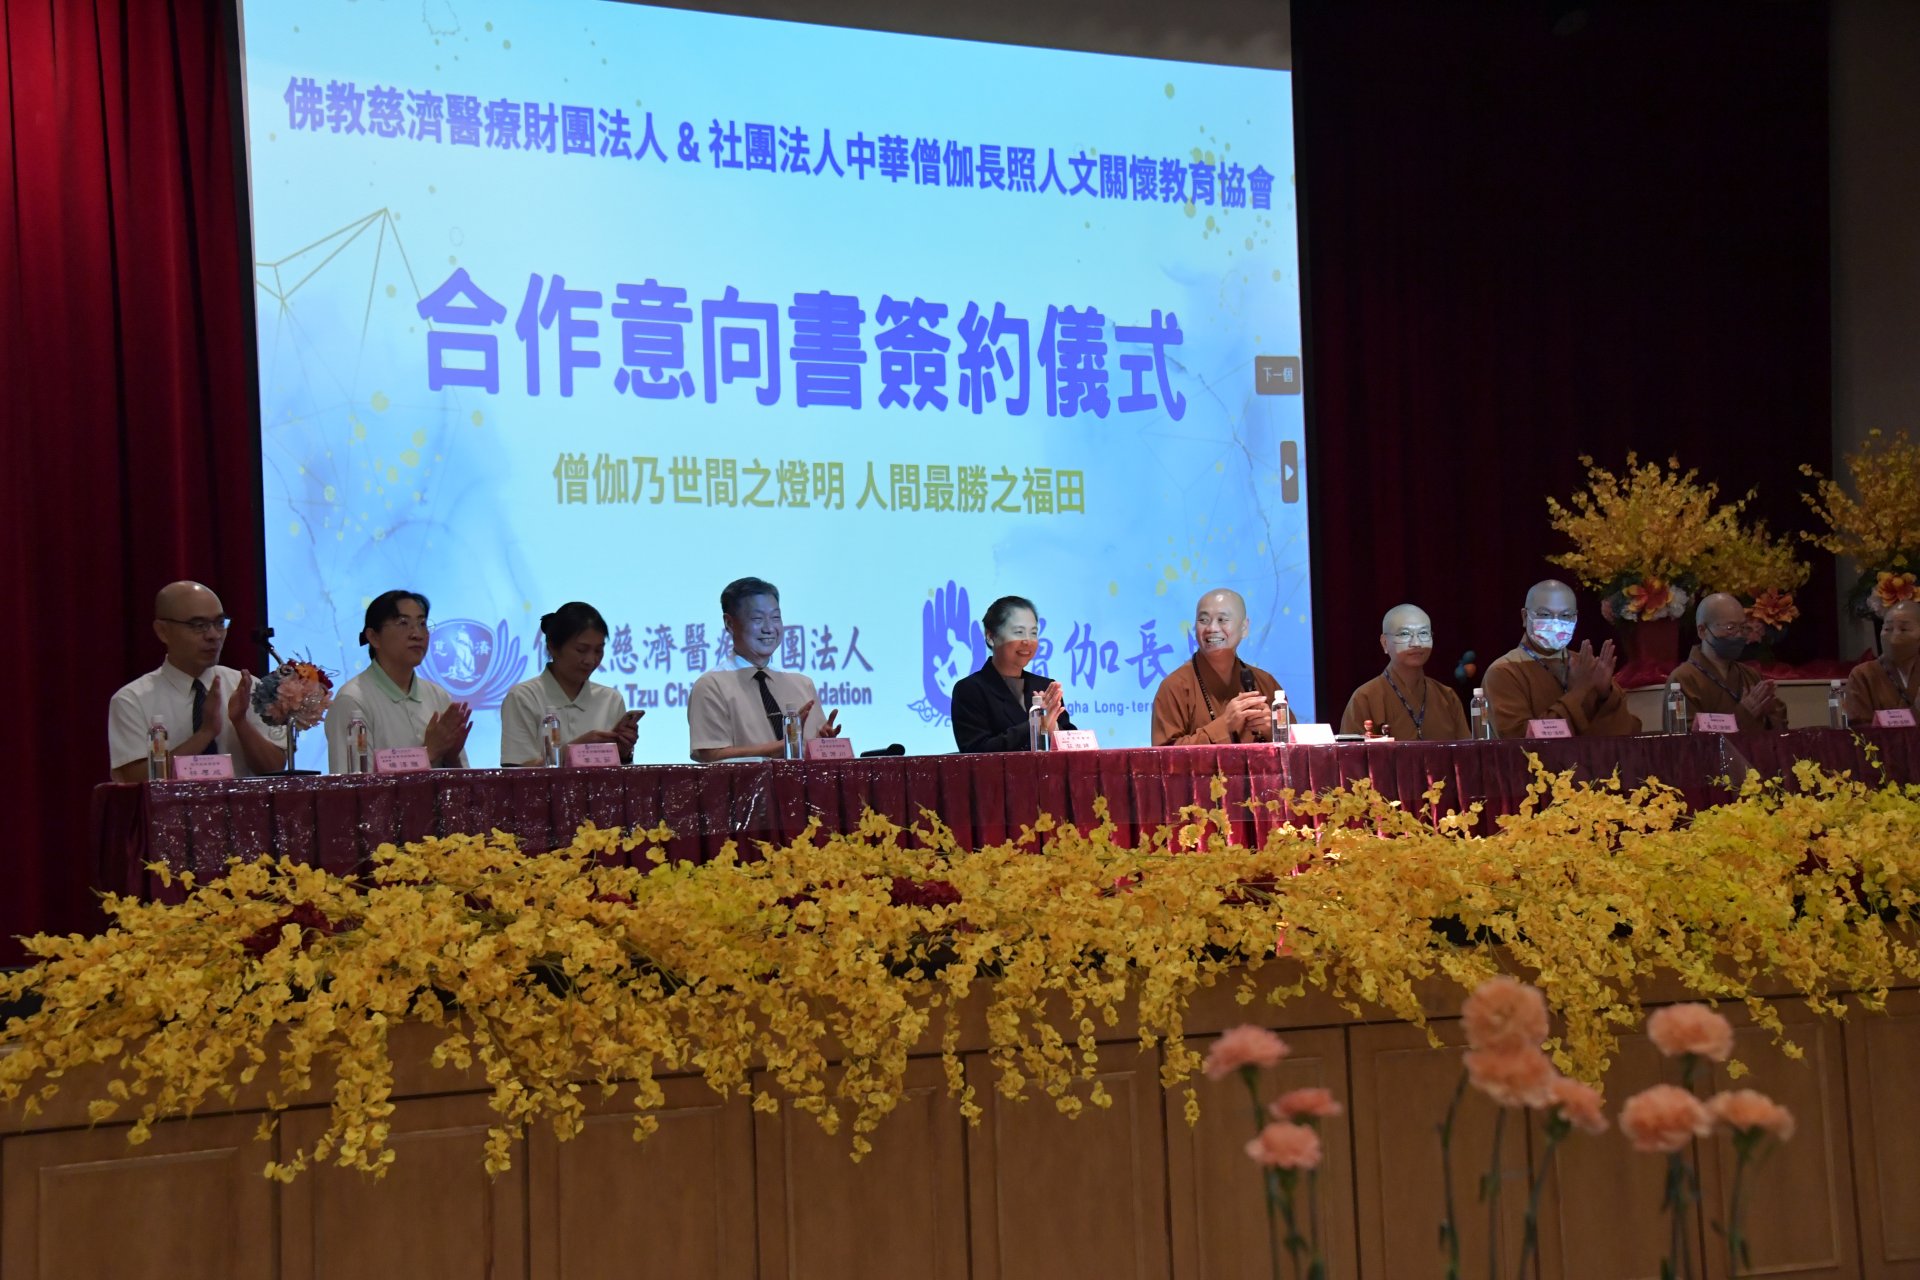 中華僧伽長照人文關懷教育協會、慈濟醫療和長照合作協助僧伽的照護